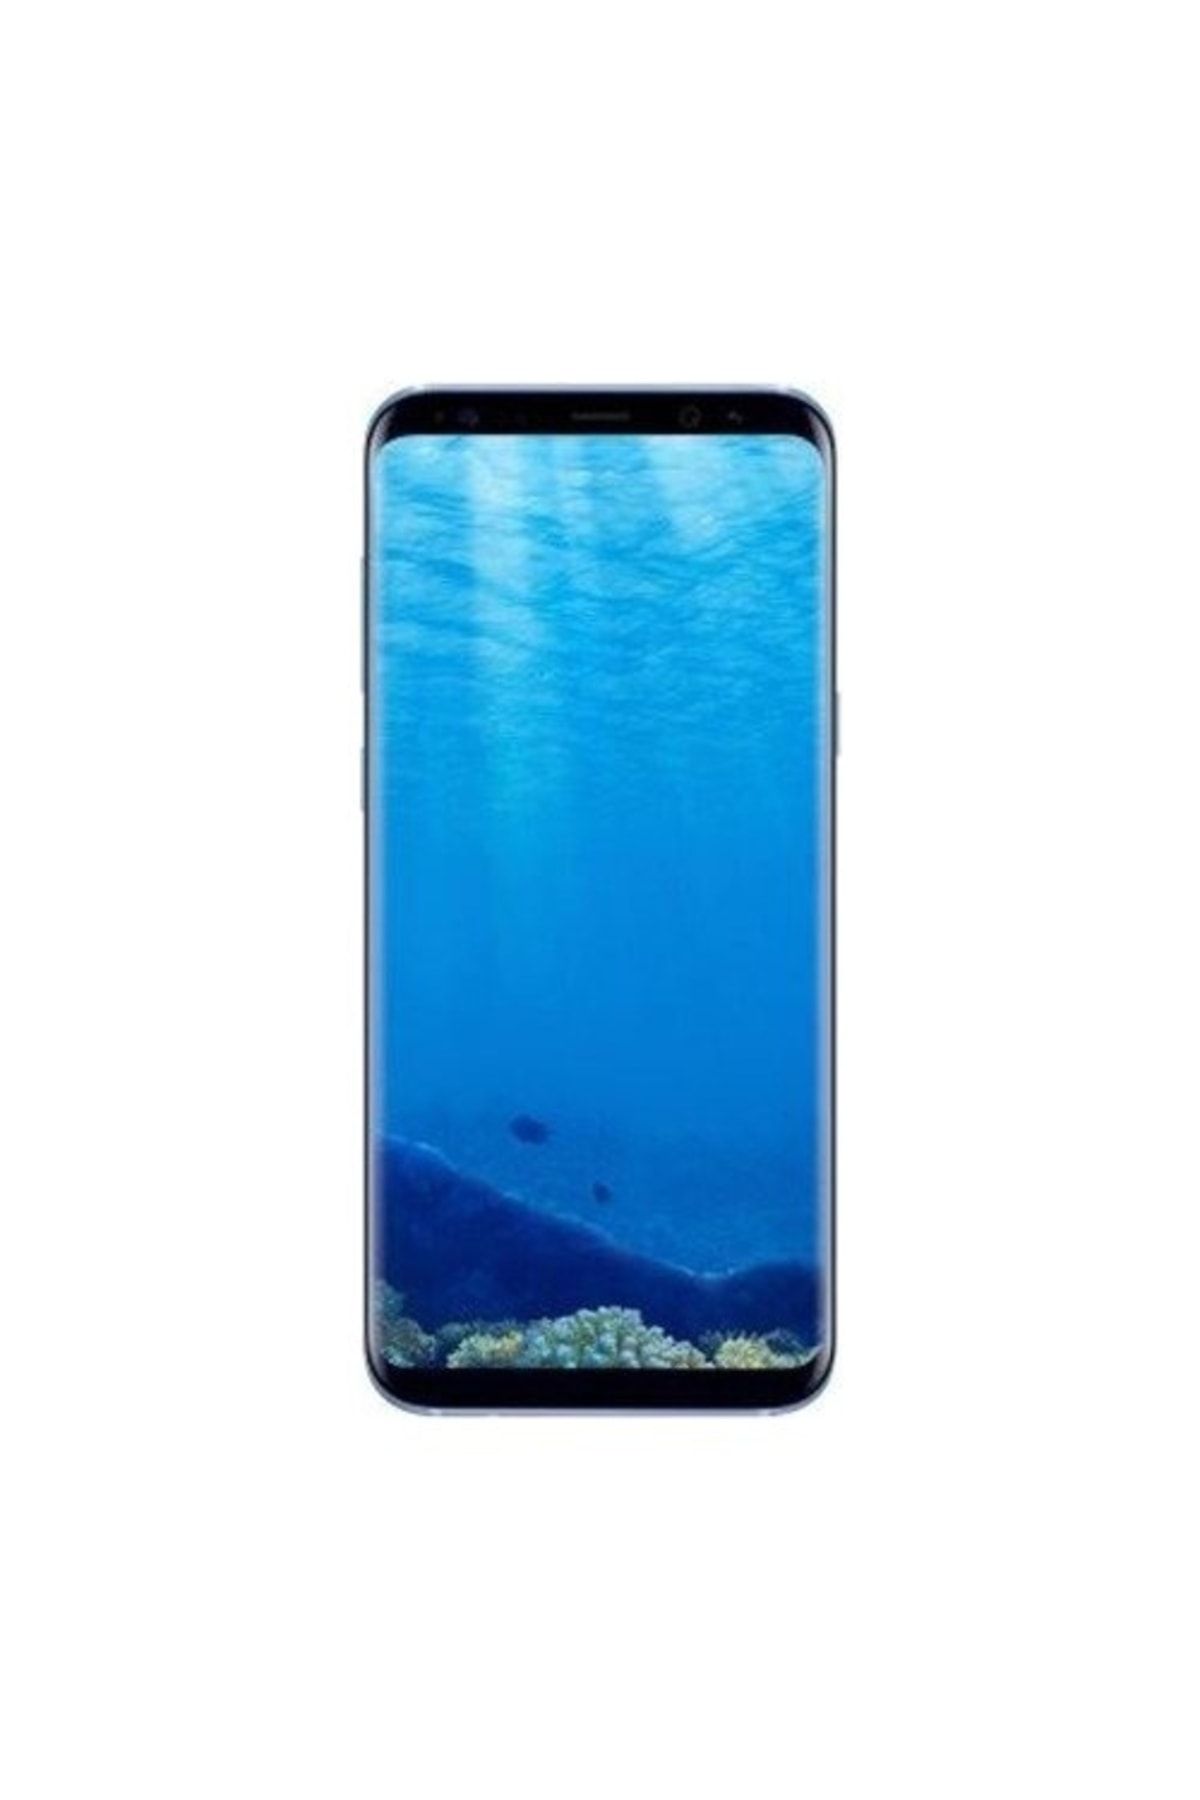 Samsung Yenilenmiş Galaxy S8 Plus Blue 64gb